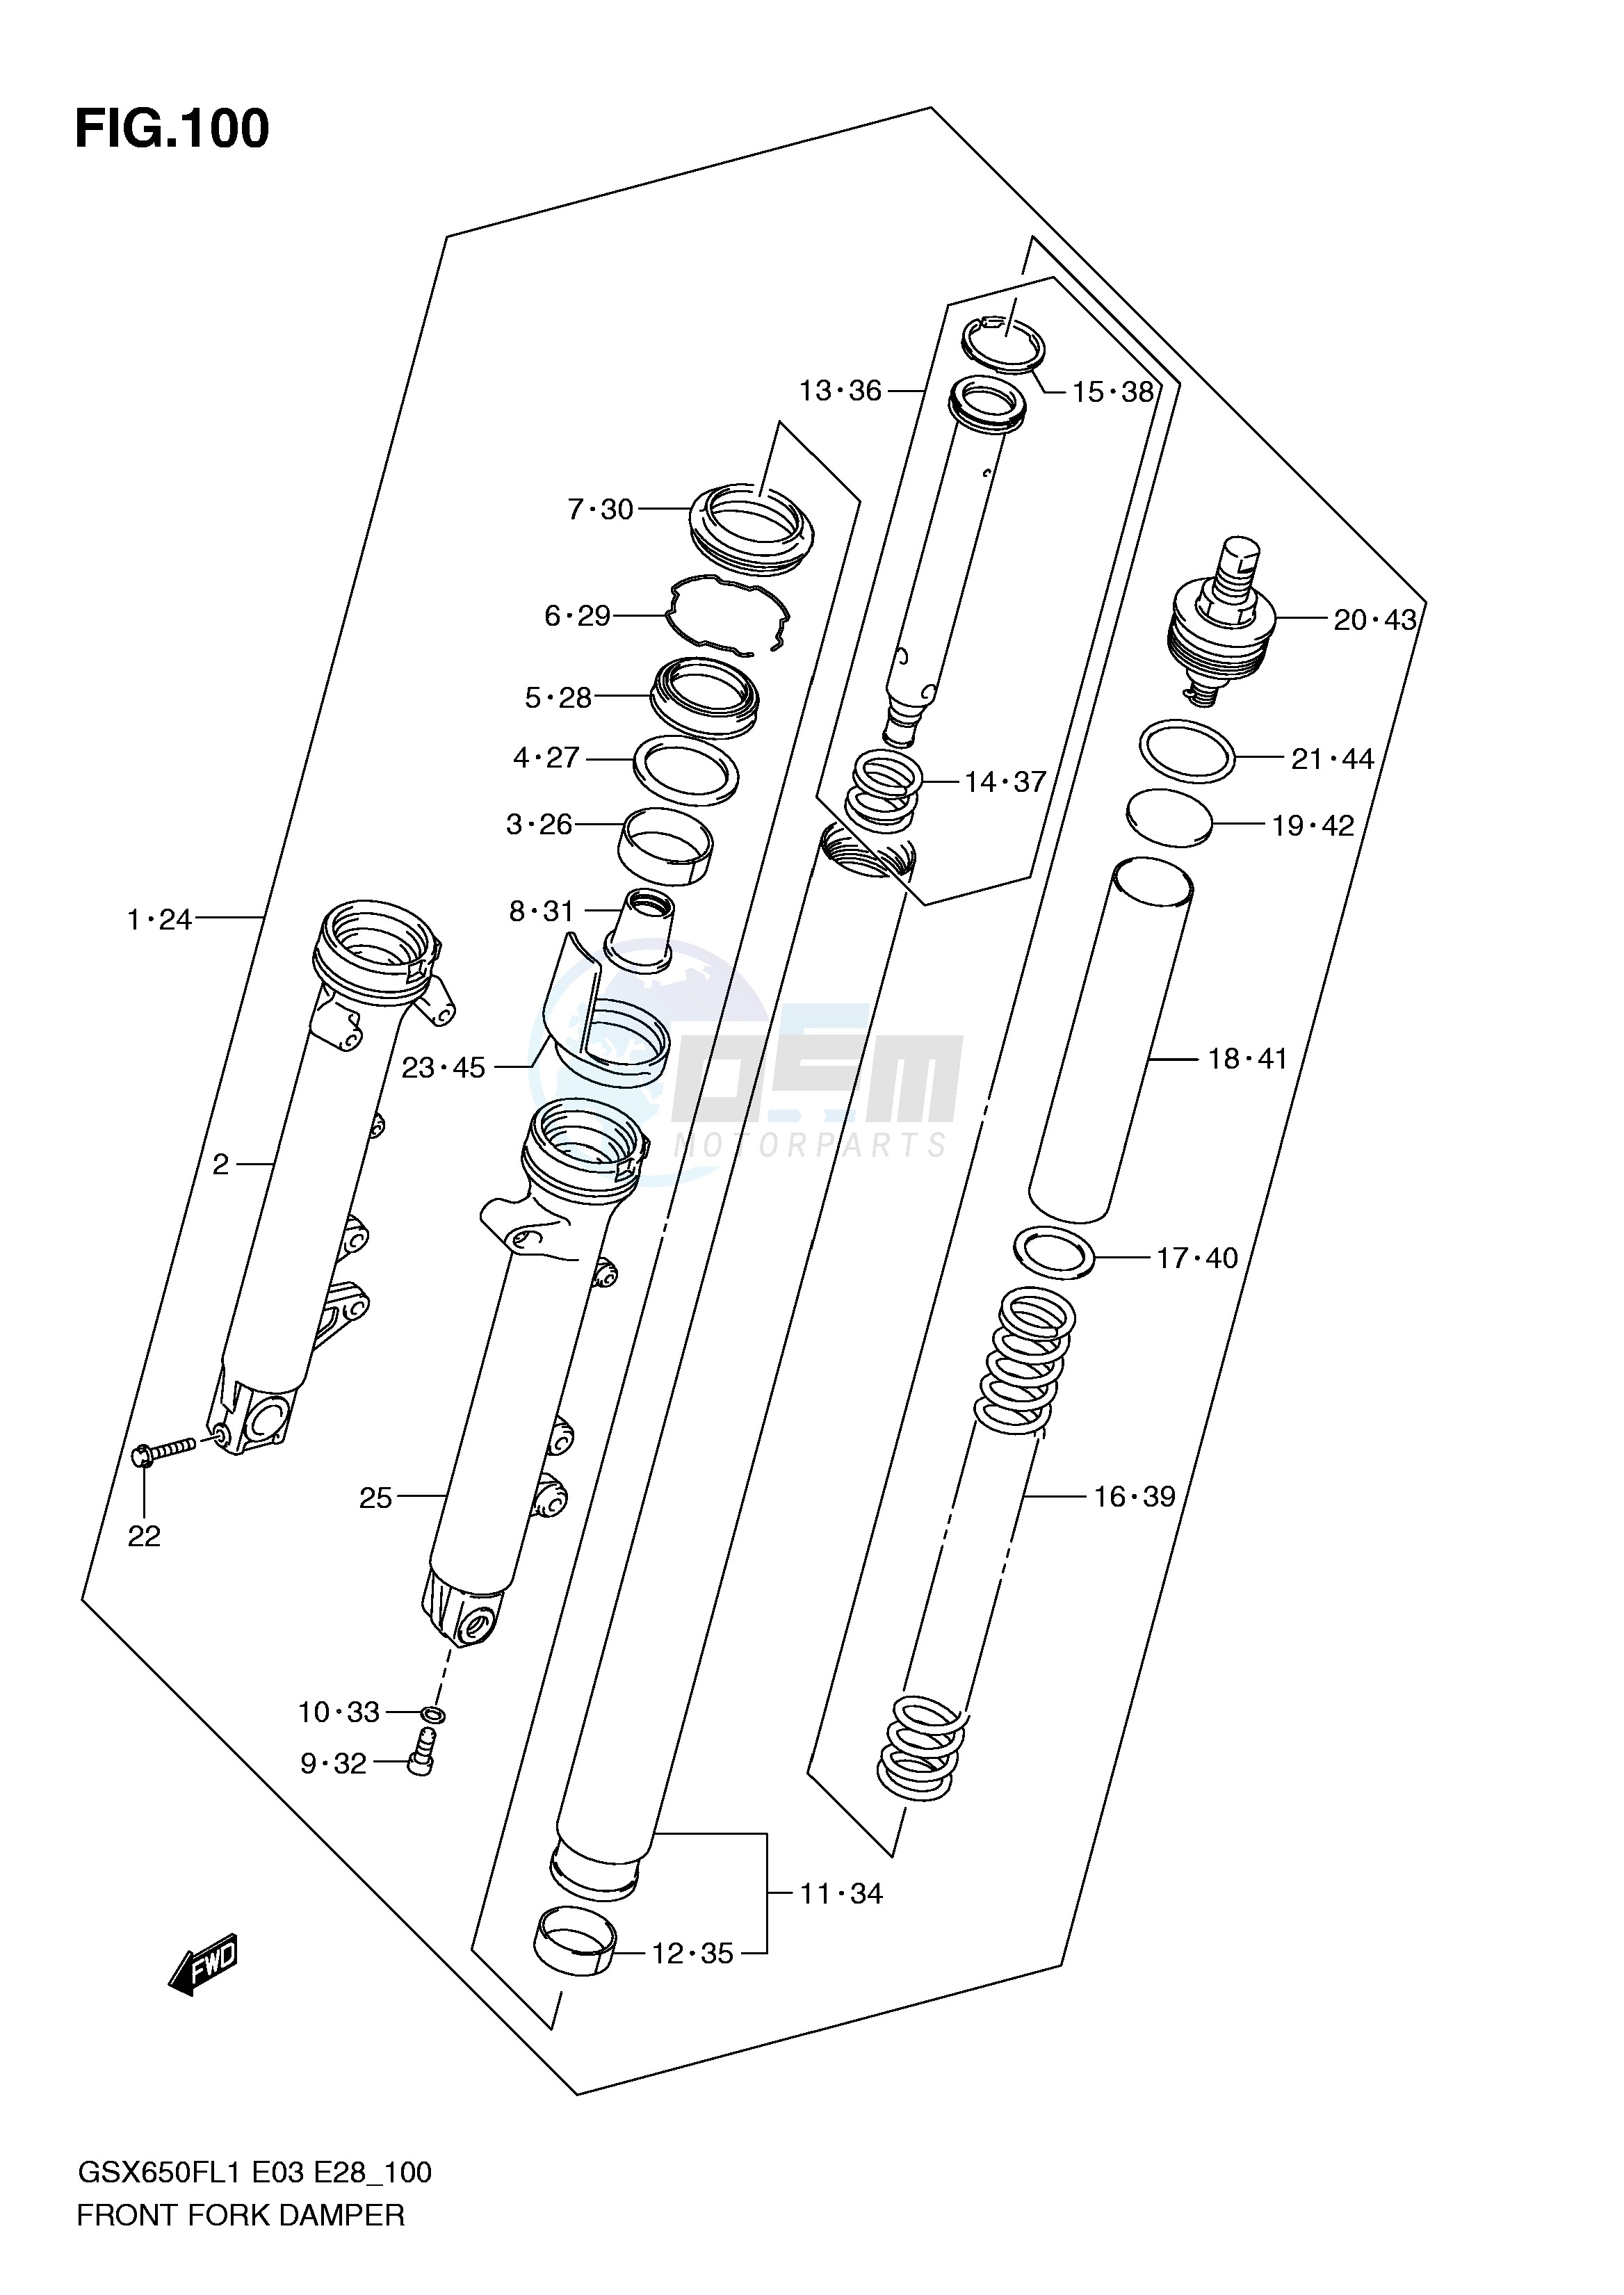 FRONT FORK DAMPER (GSX650FL1 E3) blueprint